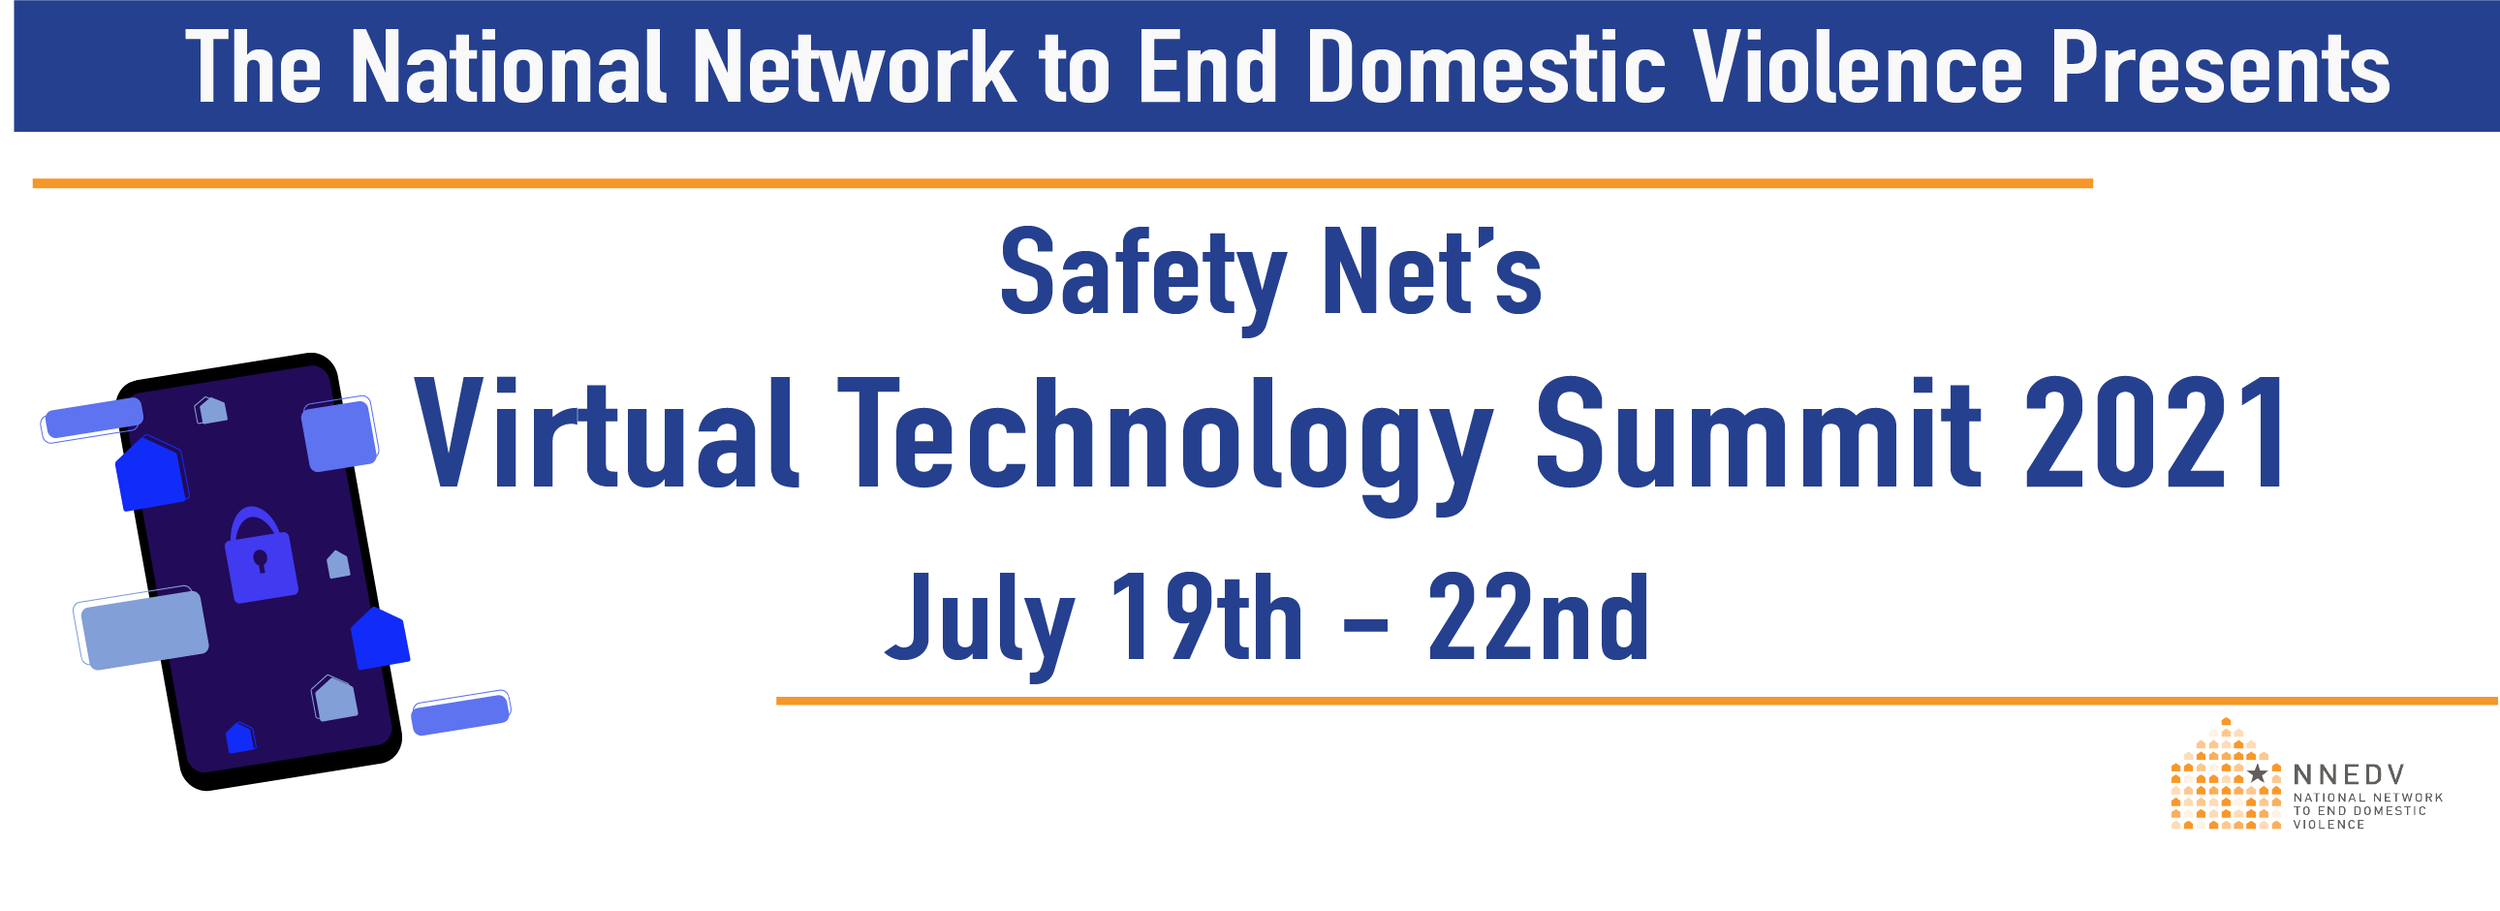 Safety Net Tech Summit 2021 Image